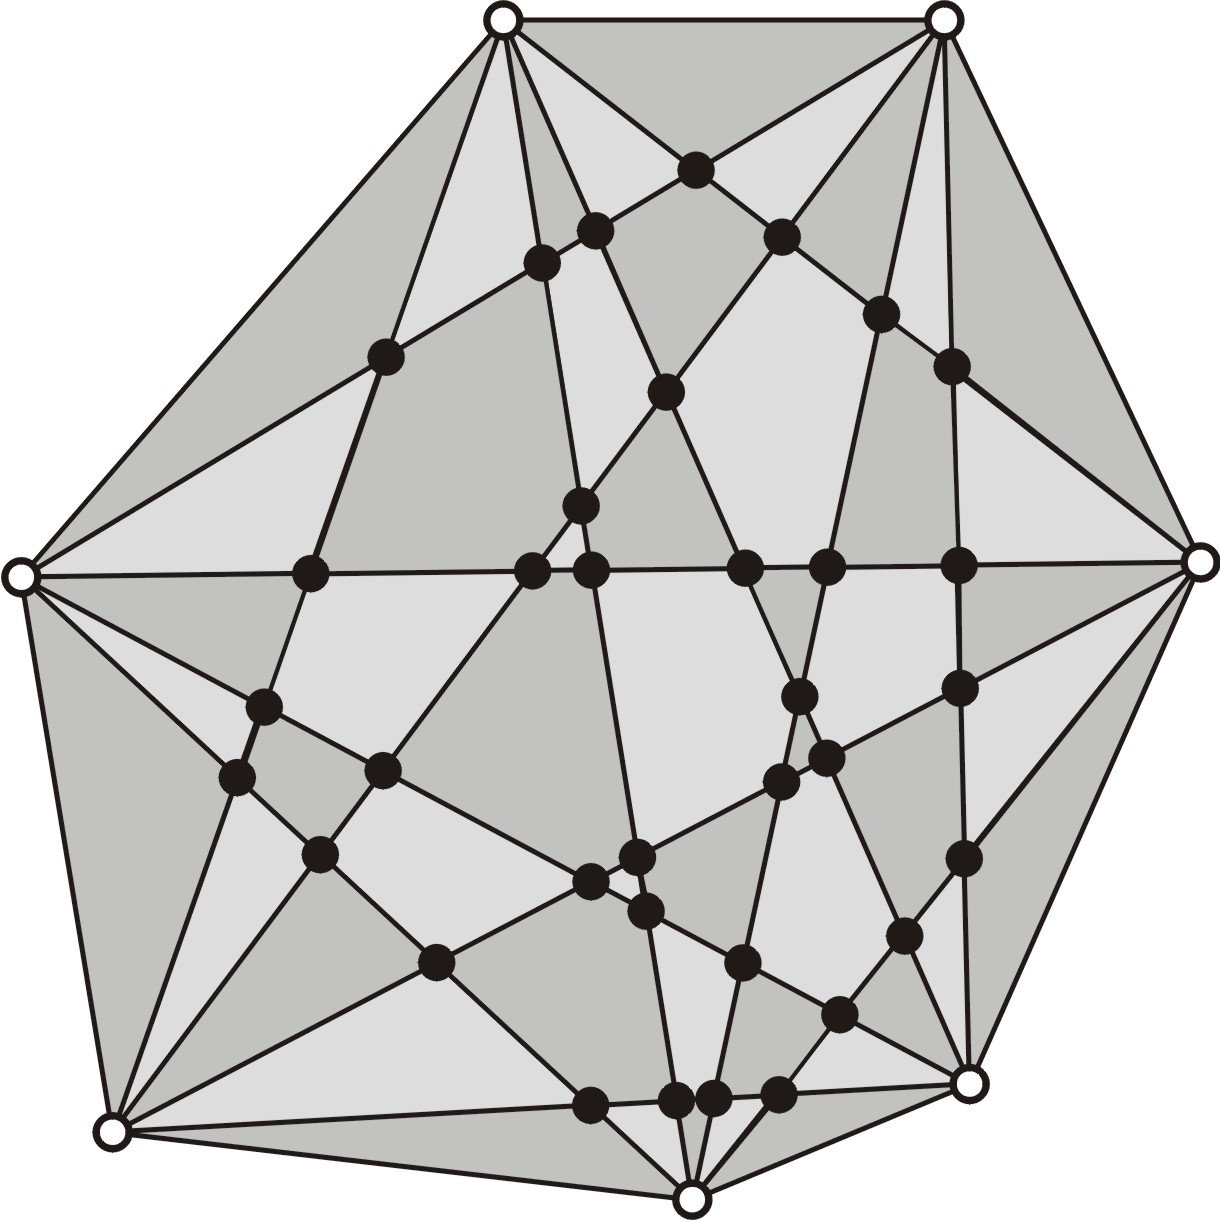 Bir (BBS) üçgeninin iki kenarı köşegenler üzerindedir. Bu iki köşegenin uç noktaları n genin dört köşesini belirler. O halde her (BBS) üçgeni, n genin dört köşesini tek türlü tanımlar.